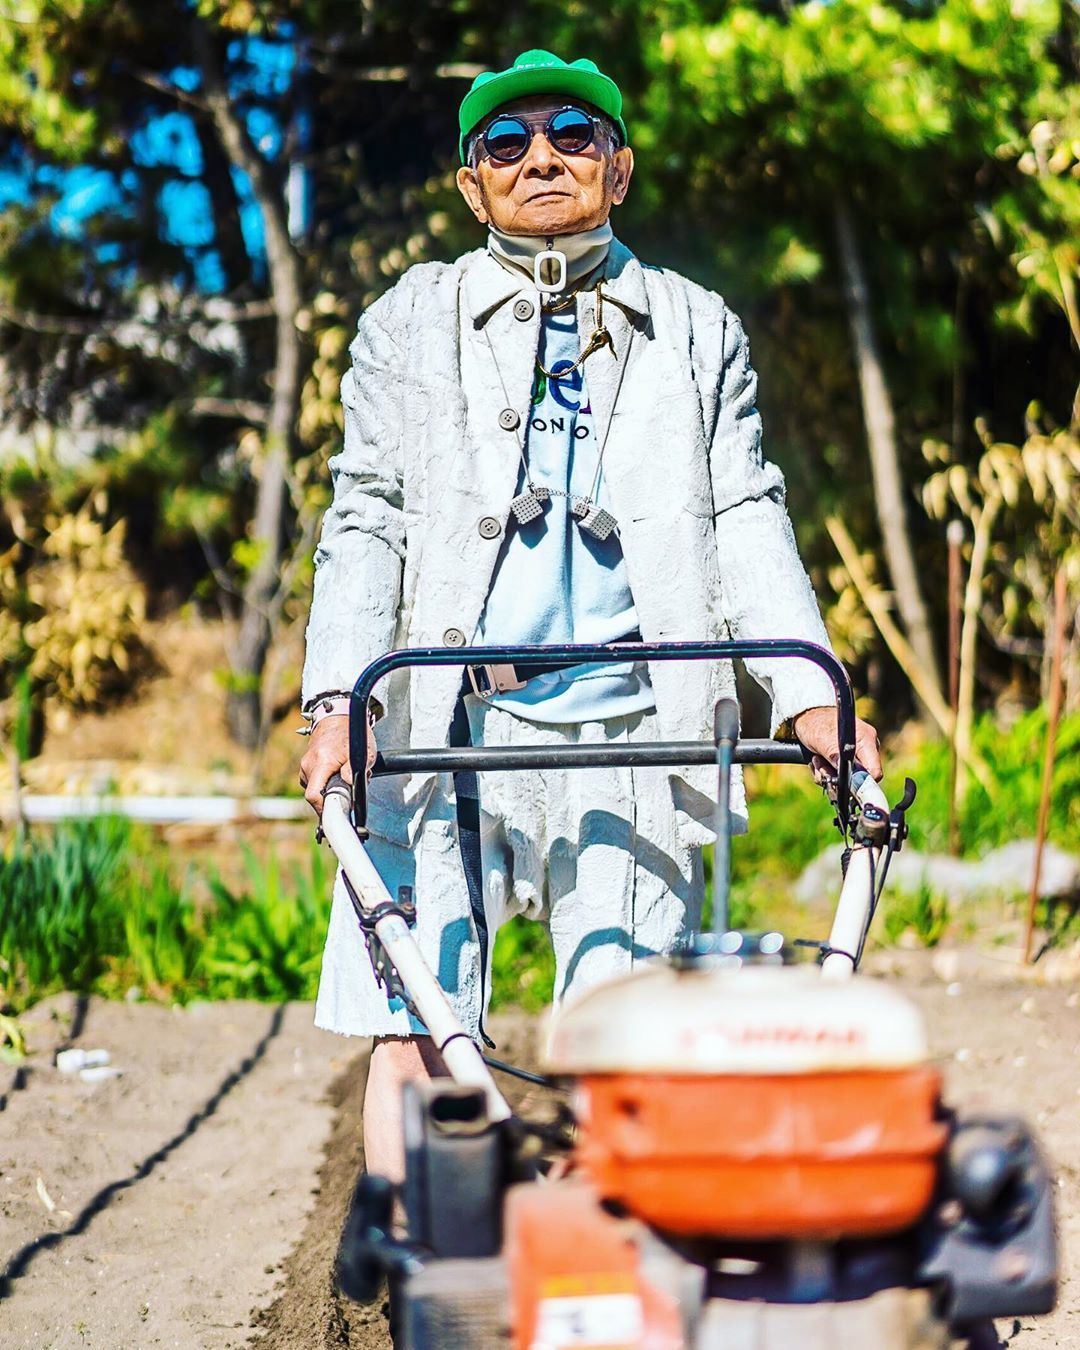 Цей 84-річний дідусь був звичайним пенсіонером, але перетворився в модника хіпстера заради внука. У виборі одягу чоловікові допомагає власний онук.